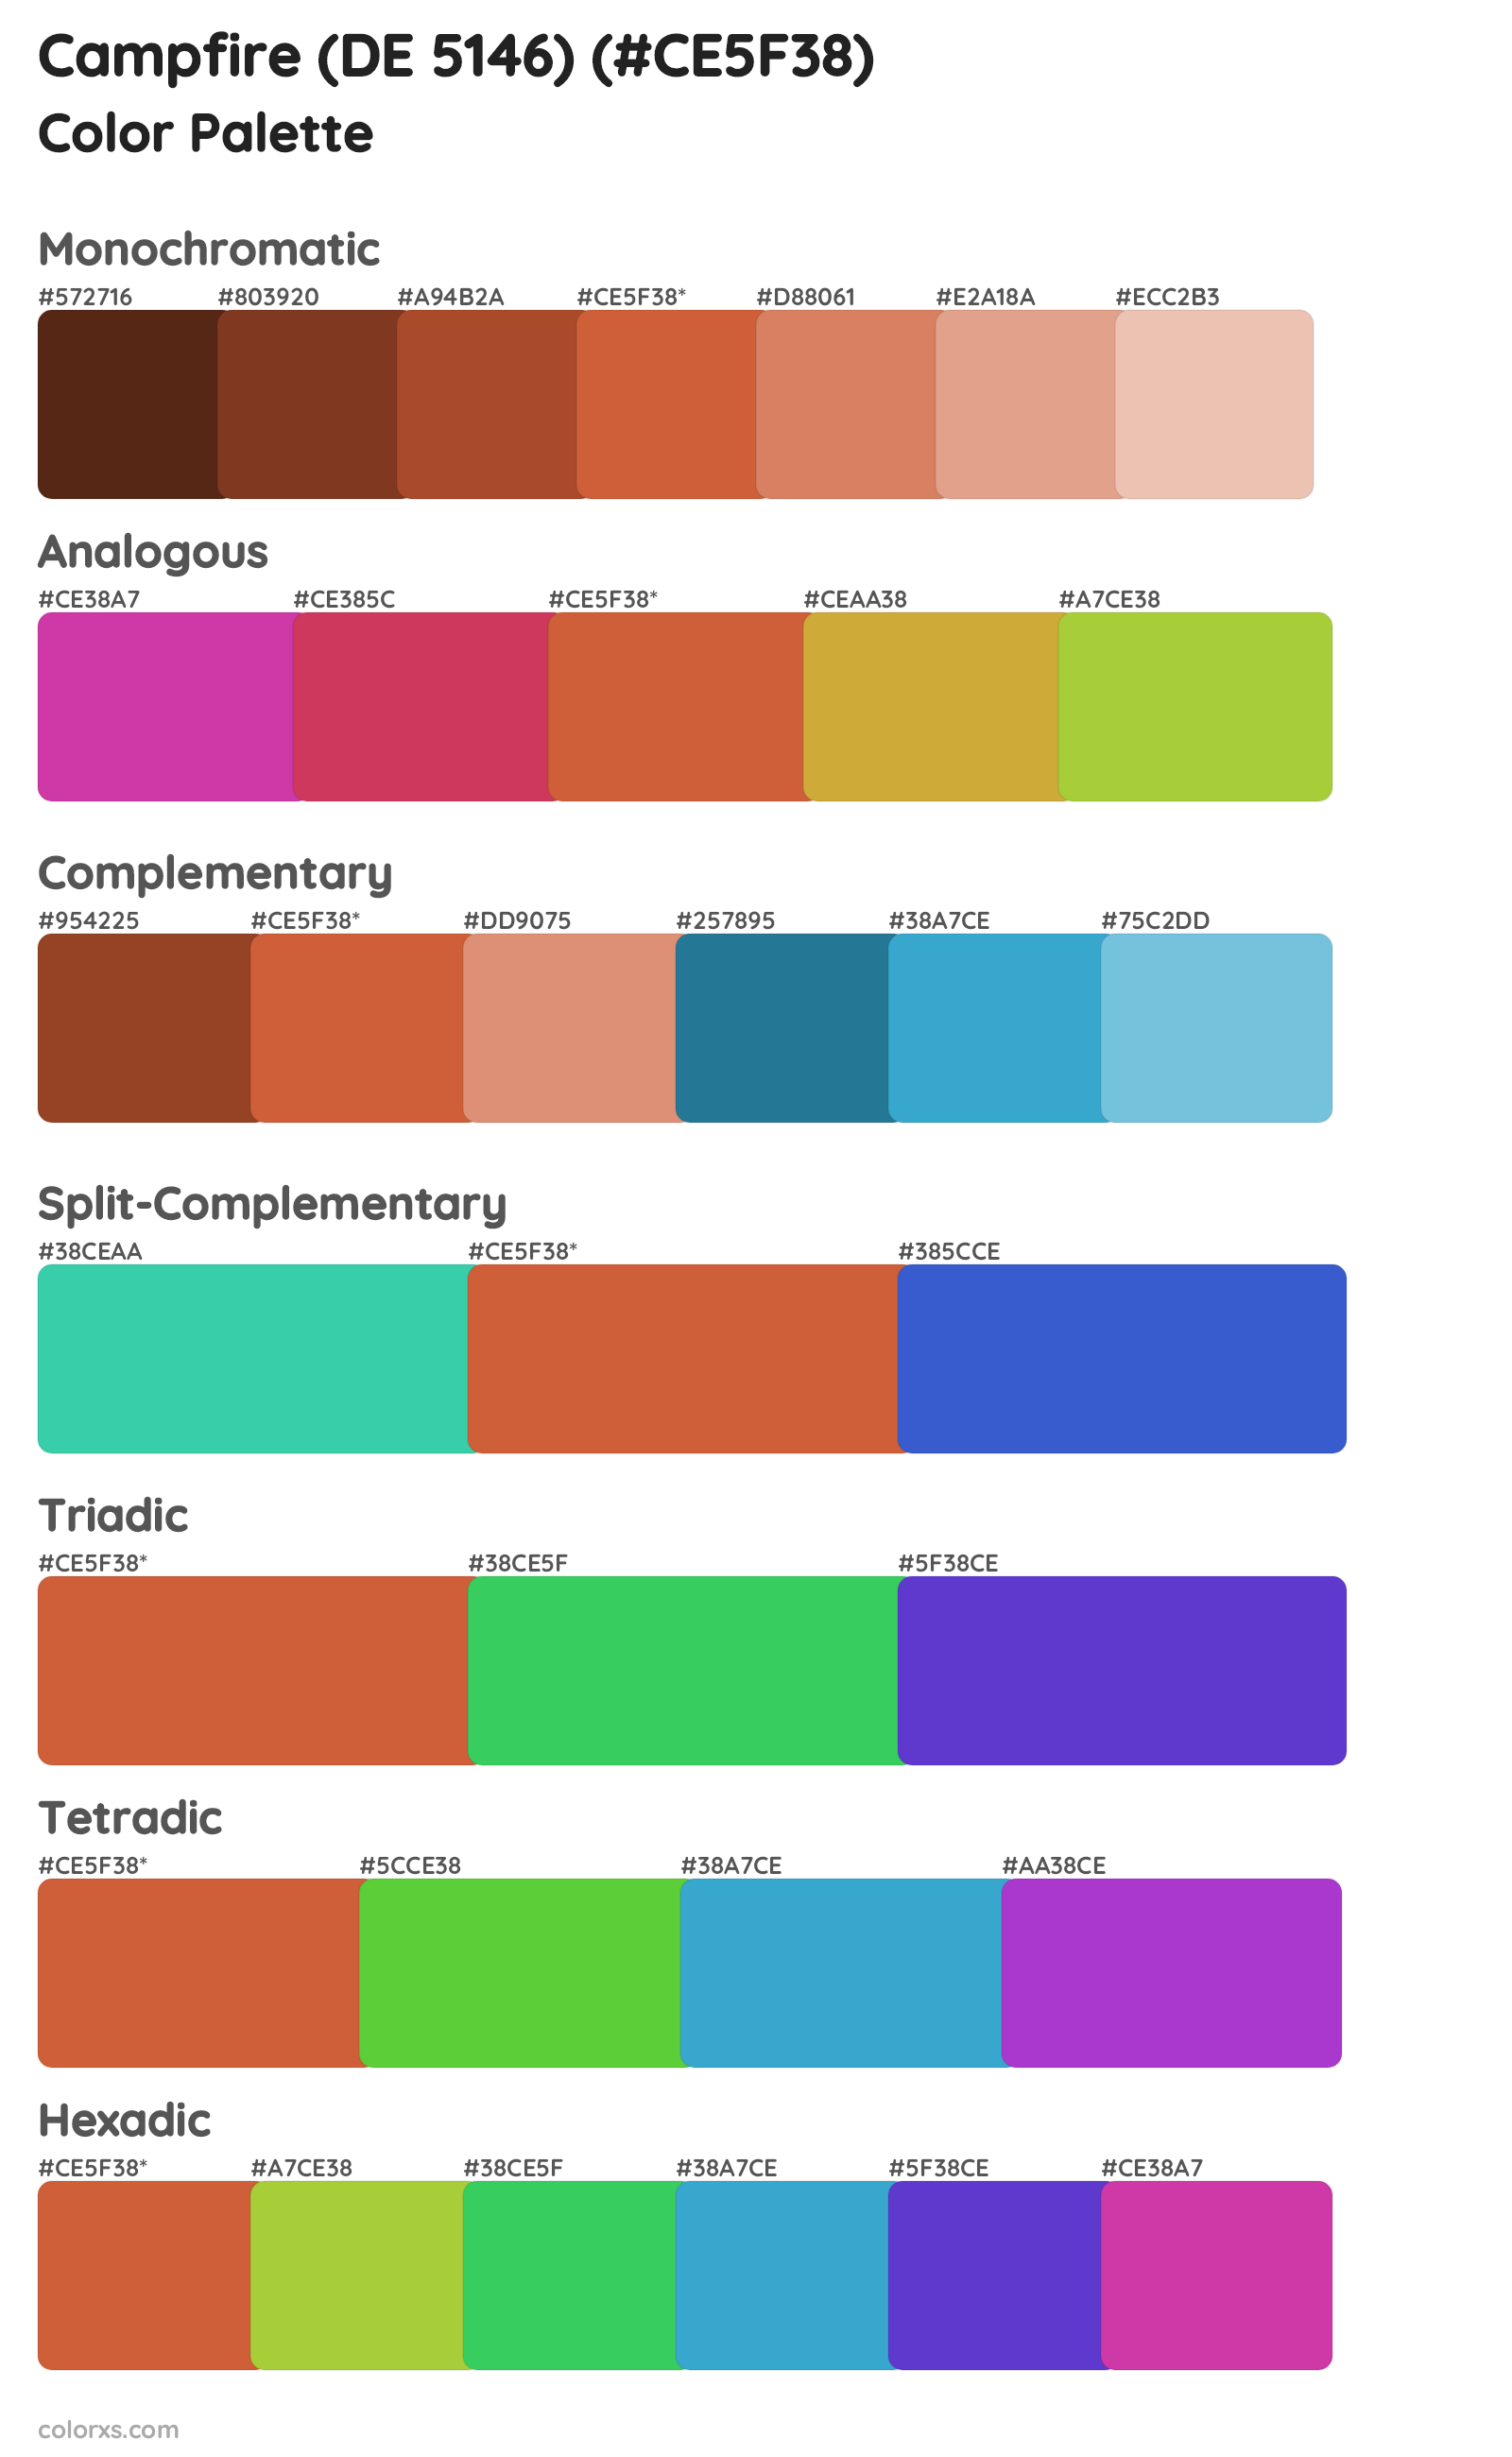 Campfire (DE 5146) Color Scheme Palettes